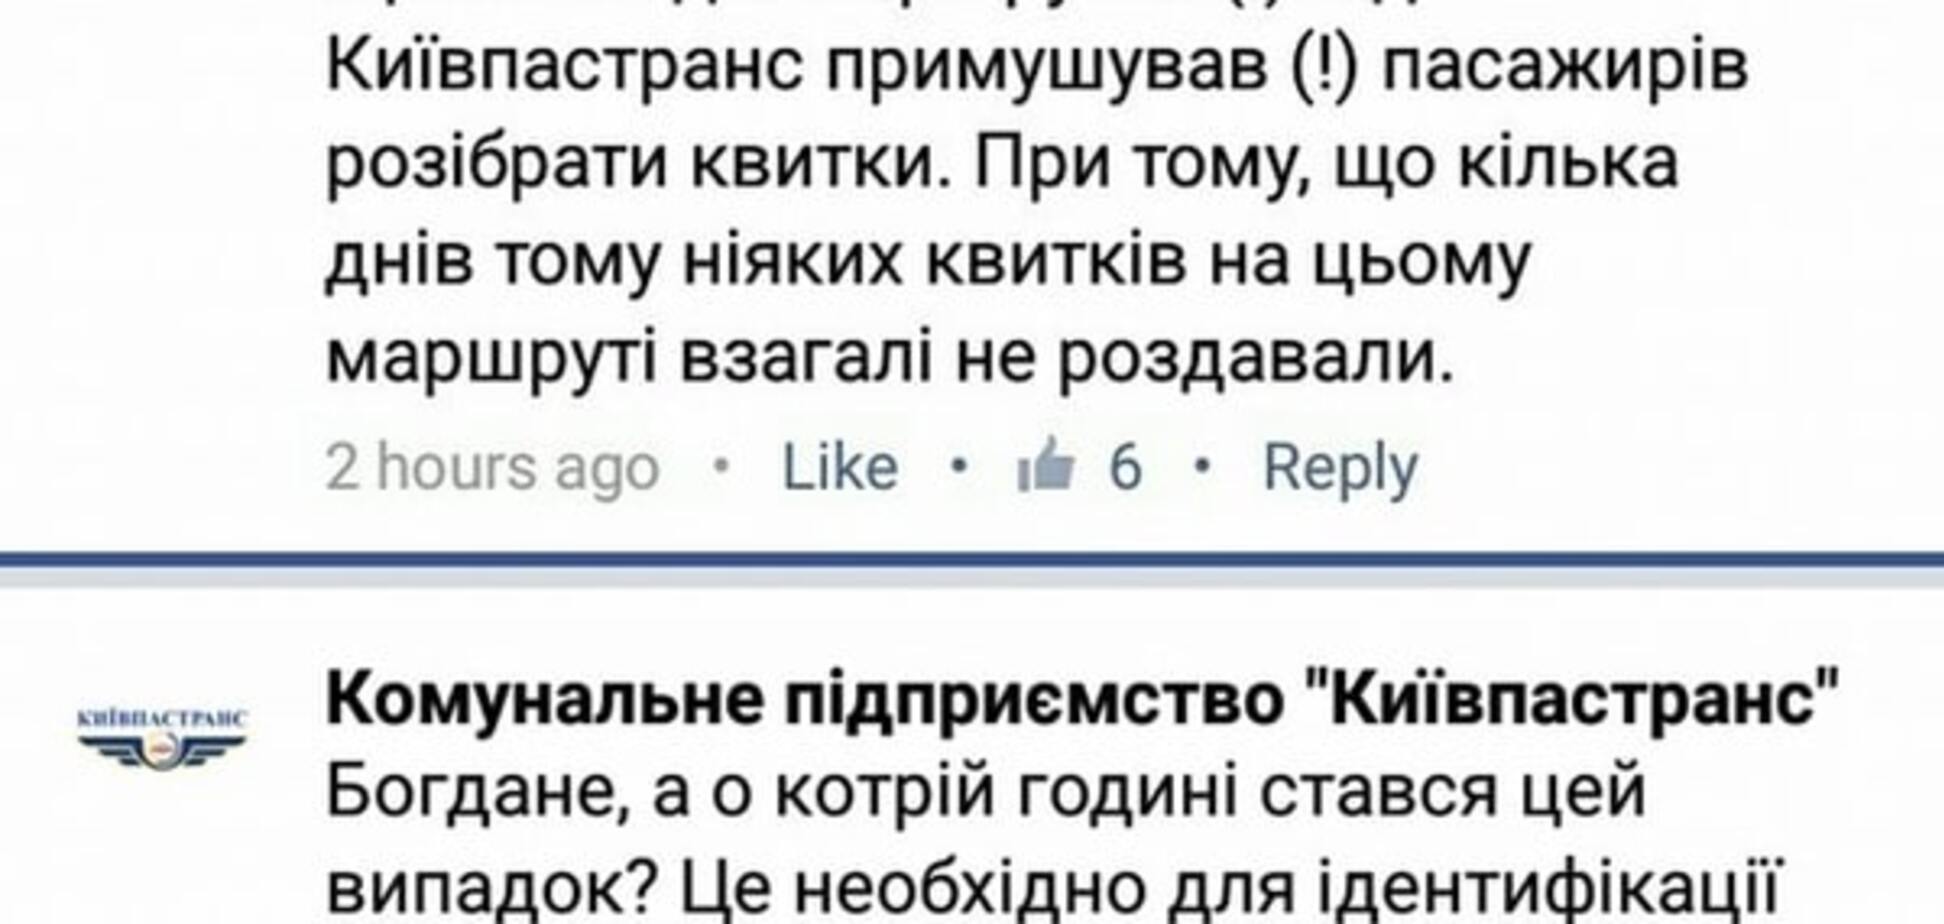 Сила соцсети: в Киеве после жалобы в Facebook начали обилечивать пассажиров